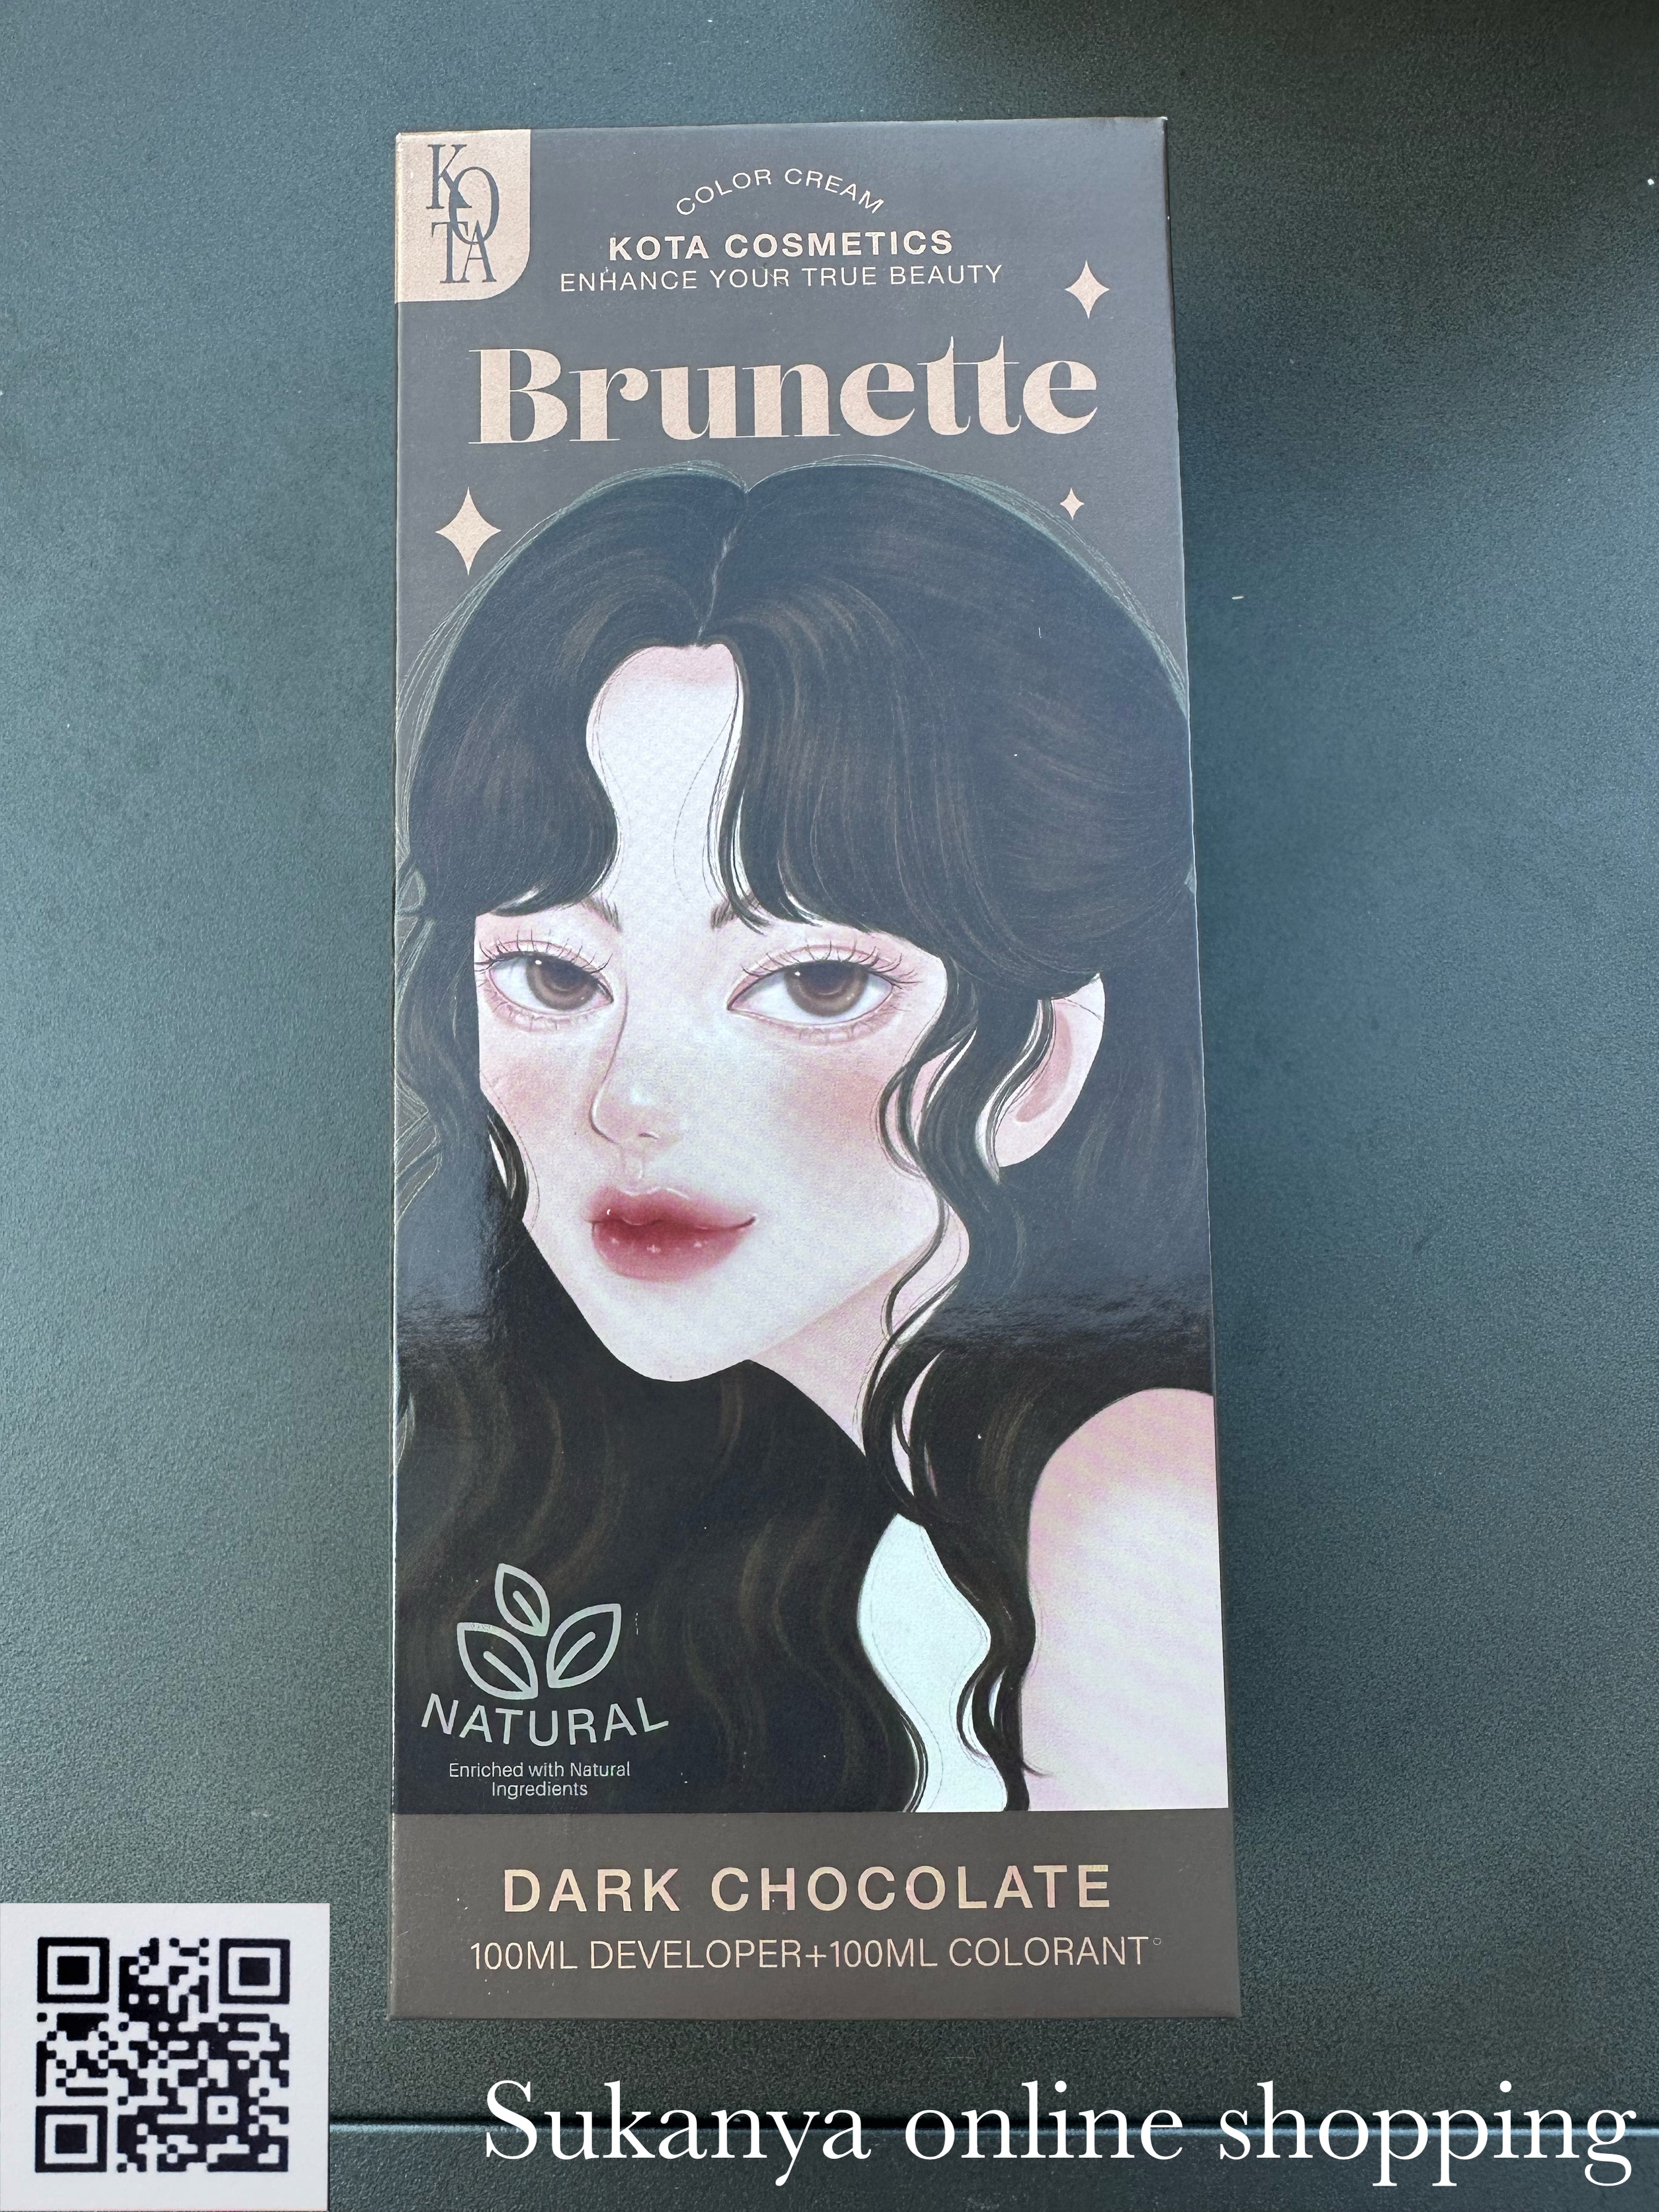 ยาย้อมผม- ครีมย้อมผม โคทา คอสเมติก คัลเลอร์ เมลโลว-บรูเน็ทท์- ครีมย้อมผม โคทา คอสเมติก คัลเลอร์ ครีม เมลโลว KOTA Cosmetics Cream Brunette (Dark Chocolate)